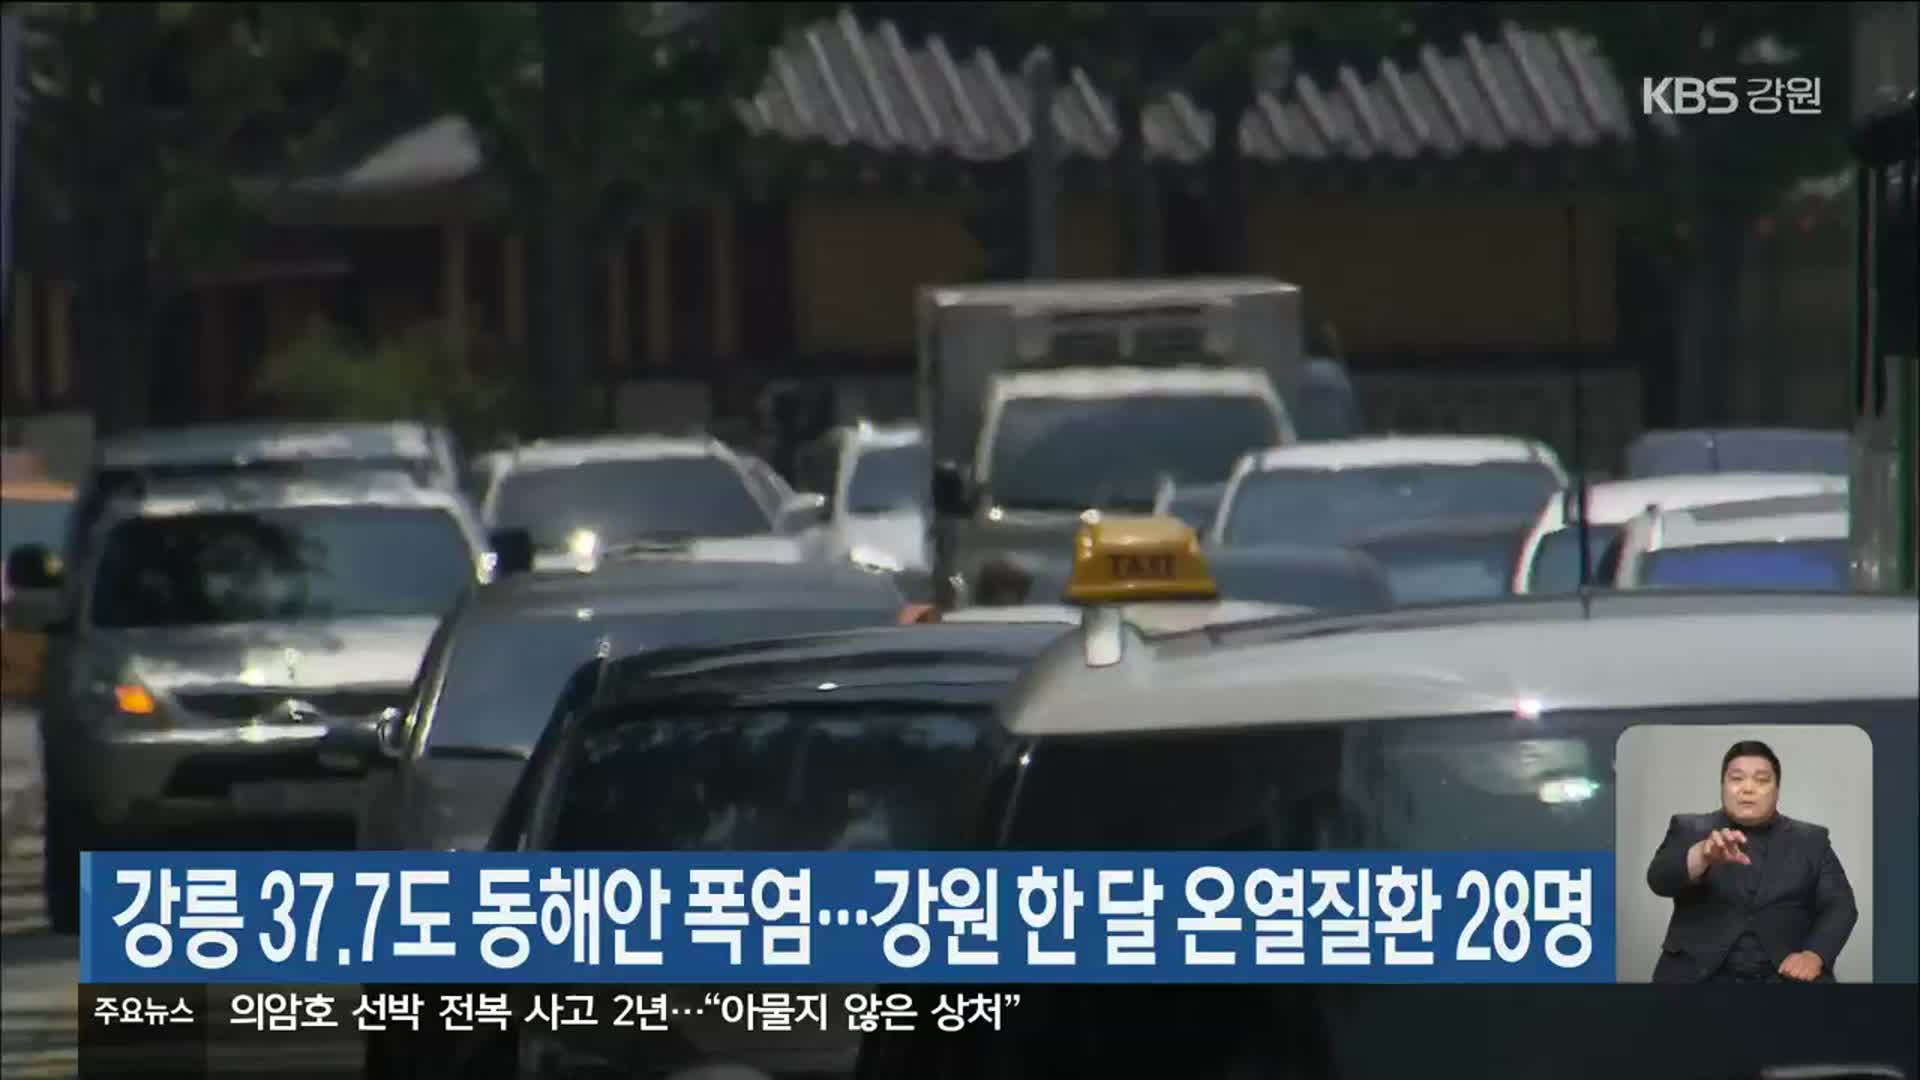 강릉 37.7도 동해안 폭염…강원 한 달 온열질환 28명